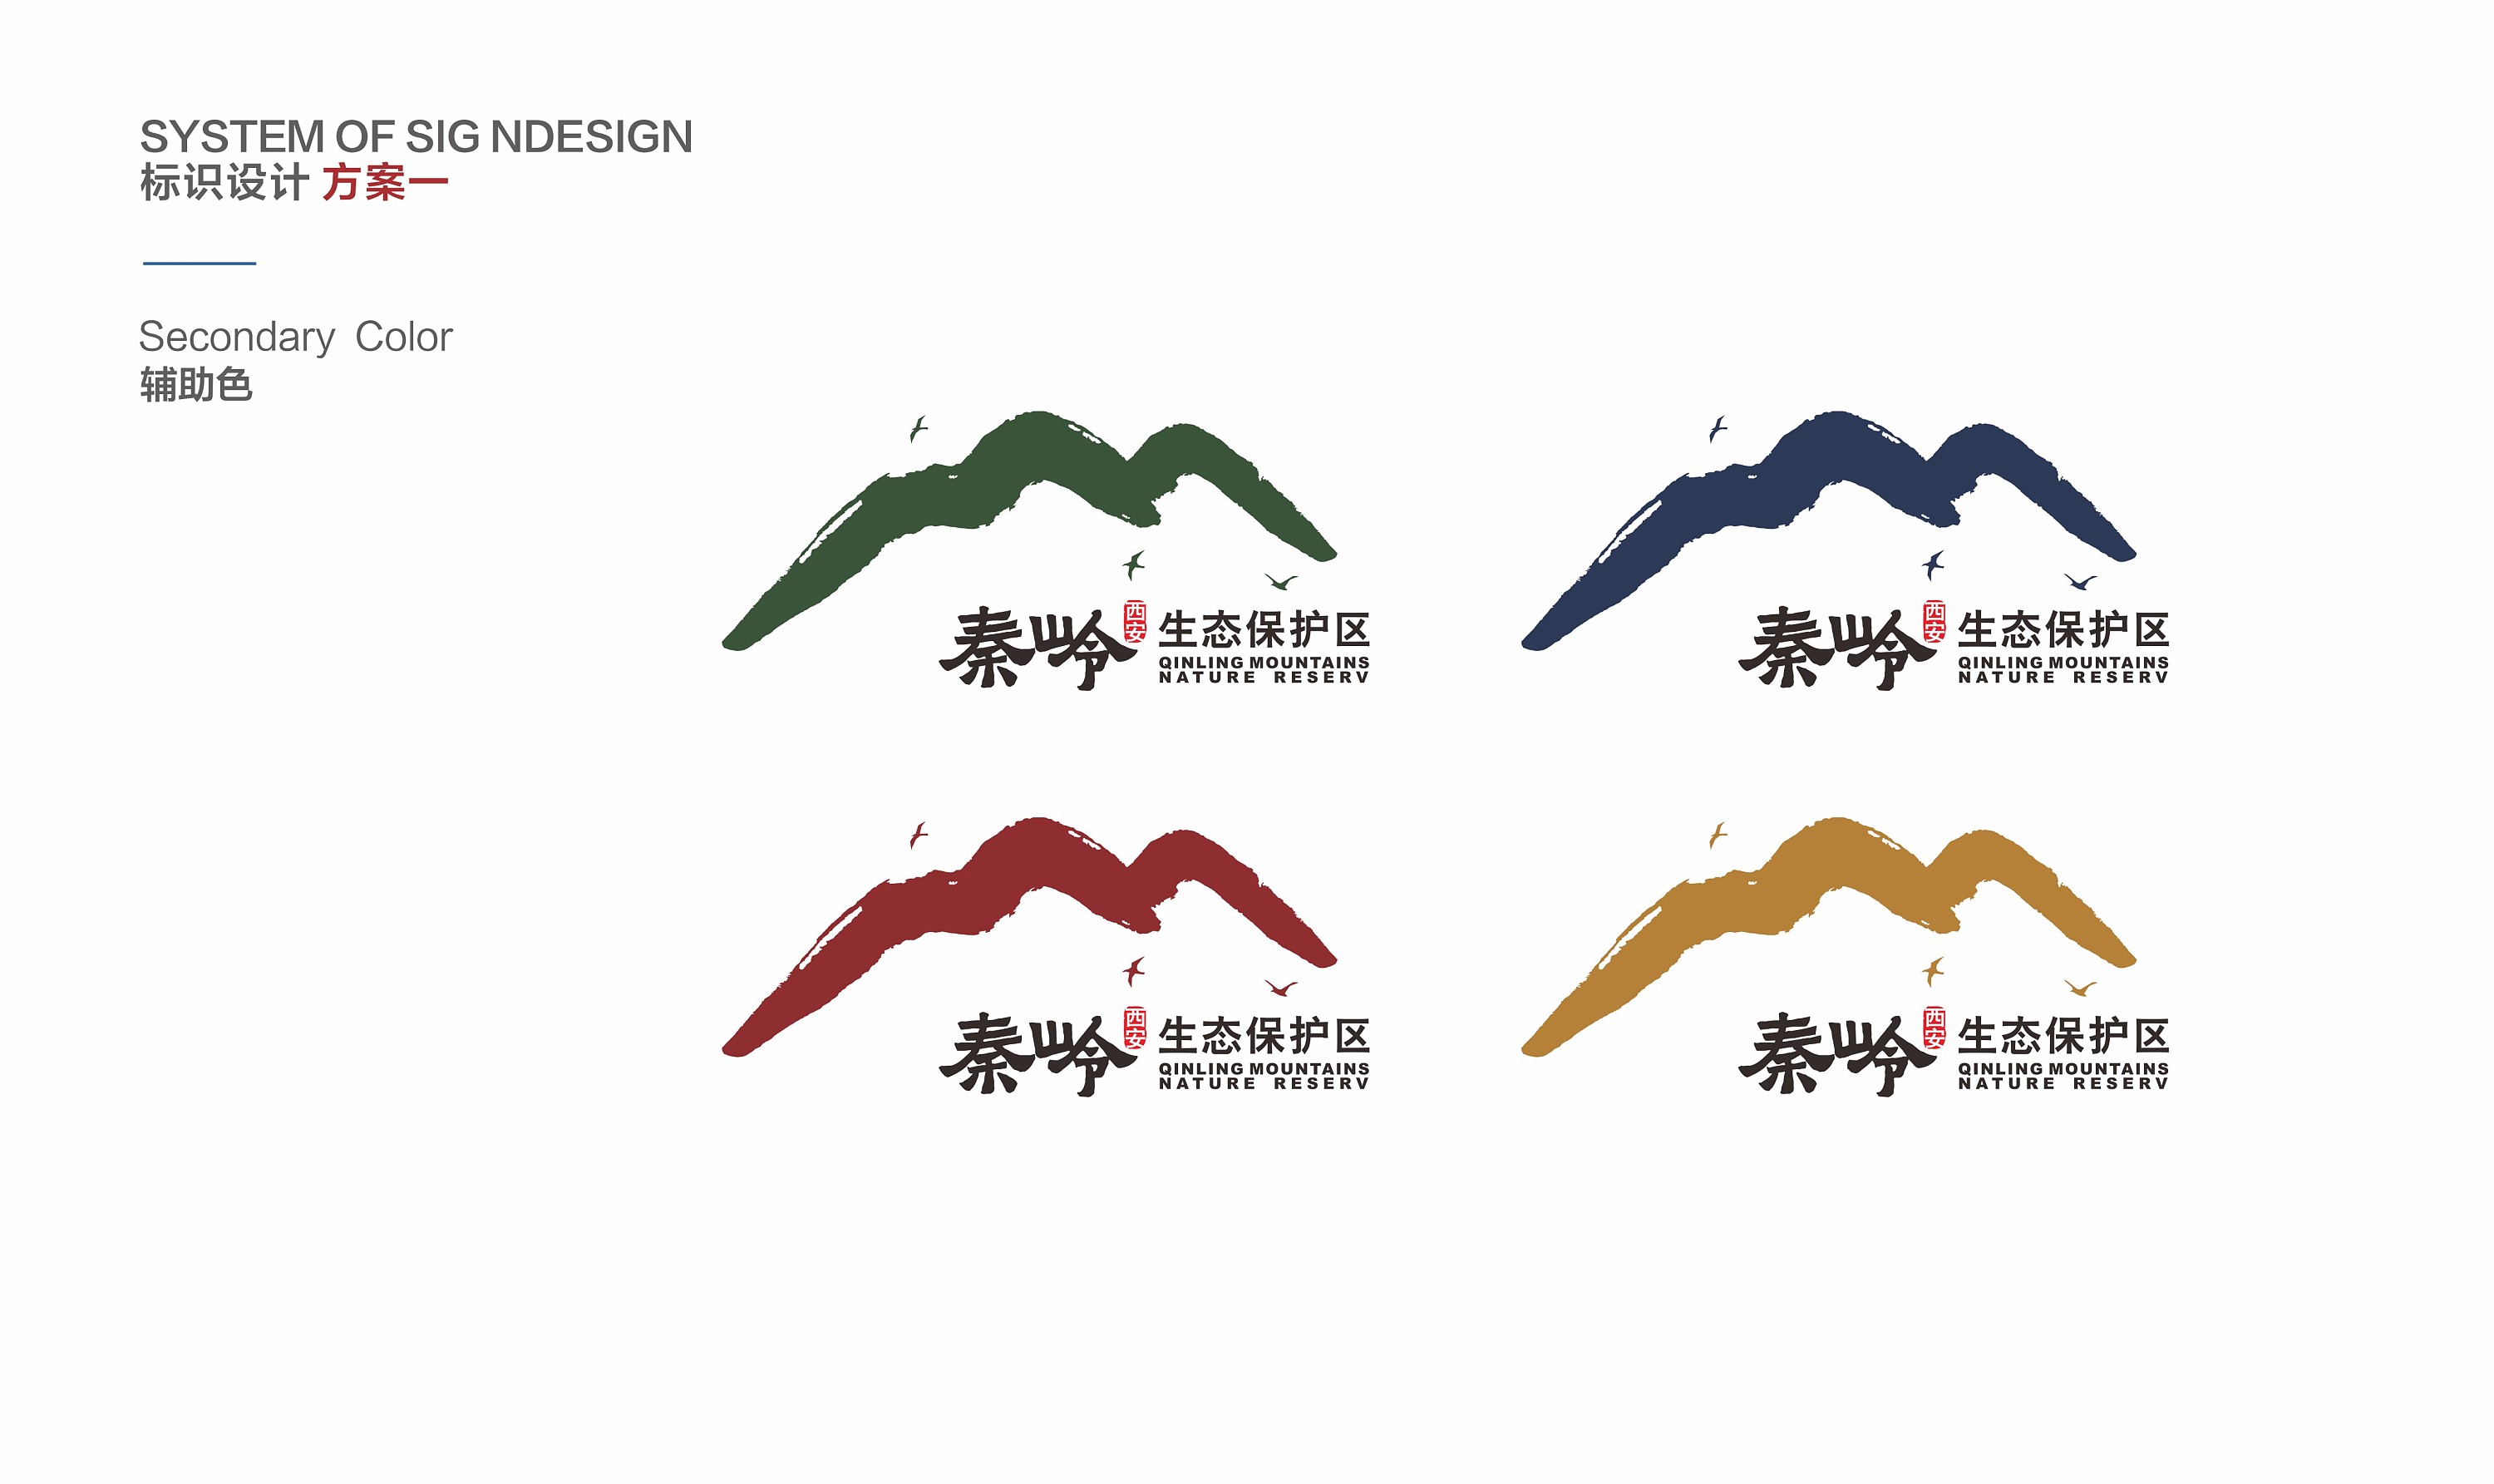 秦岭国家公园logo征集图片